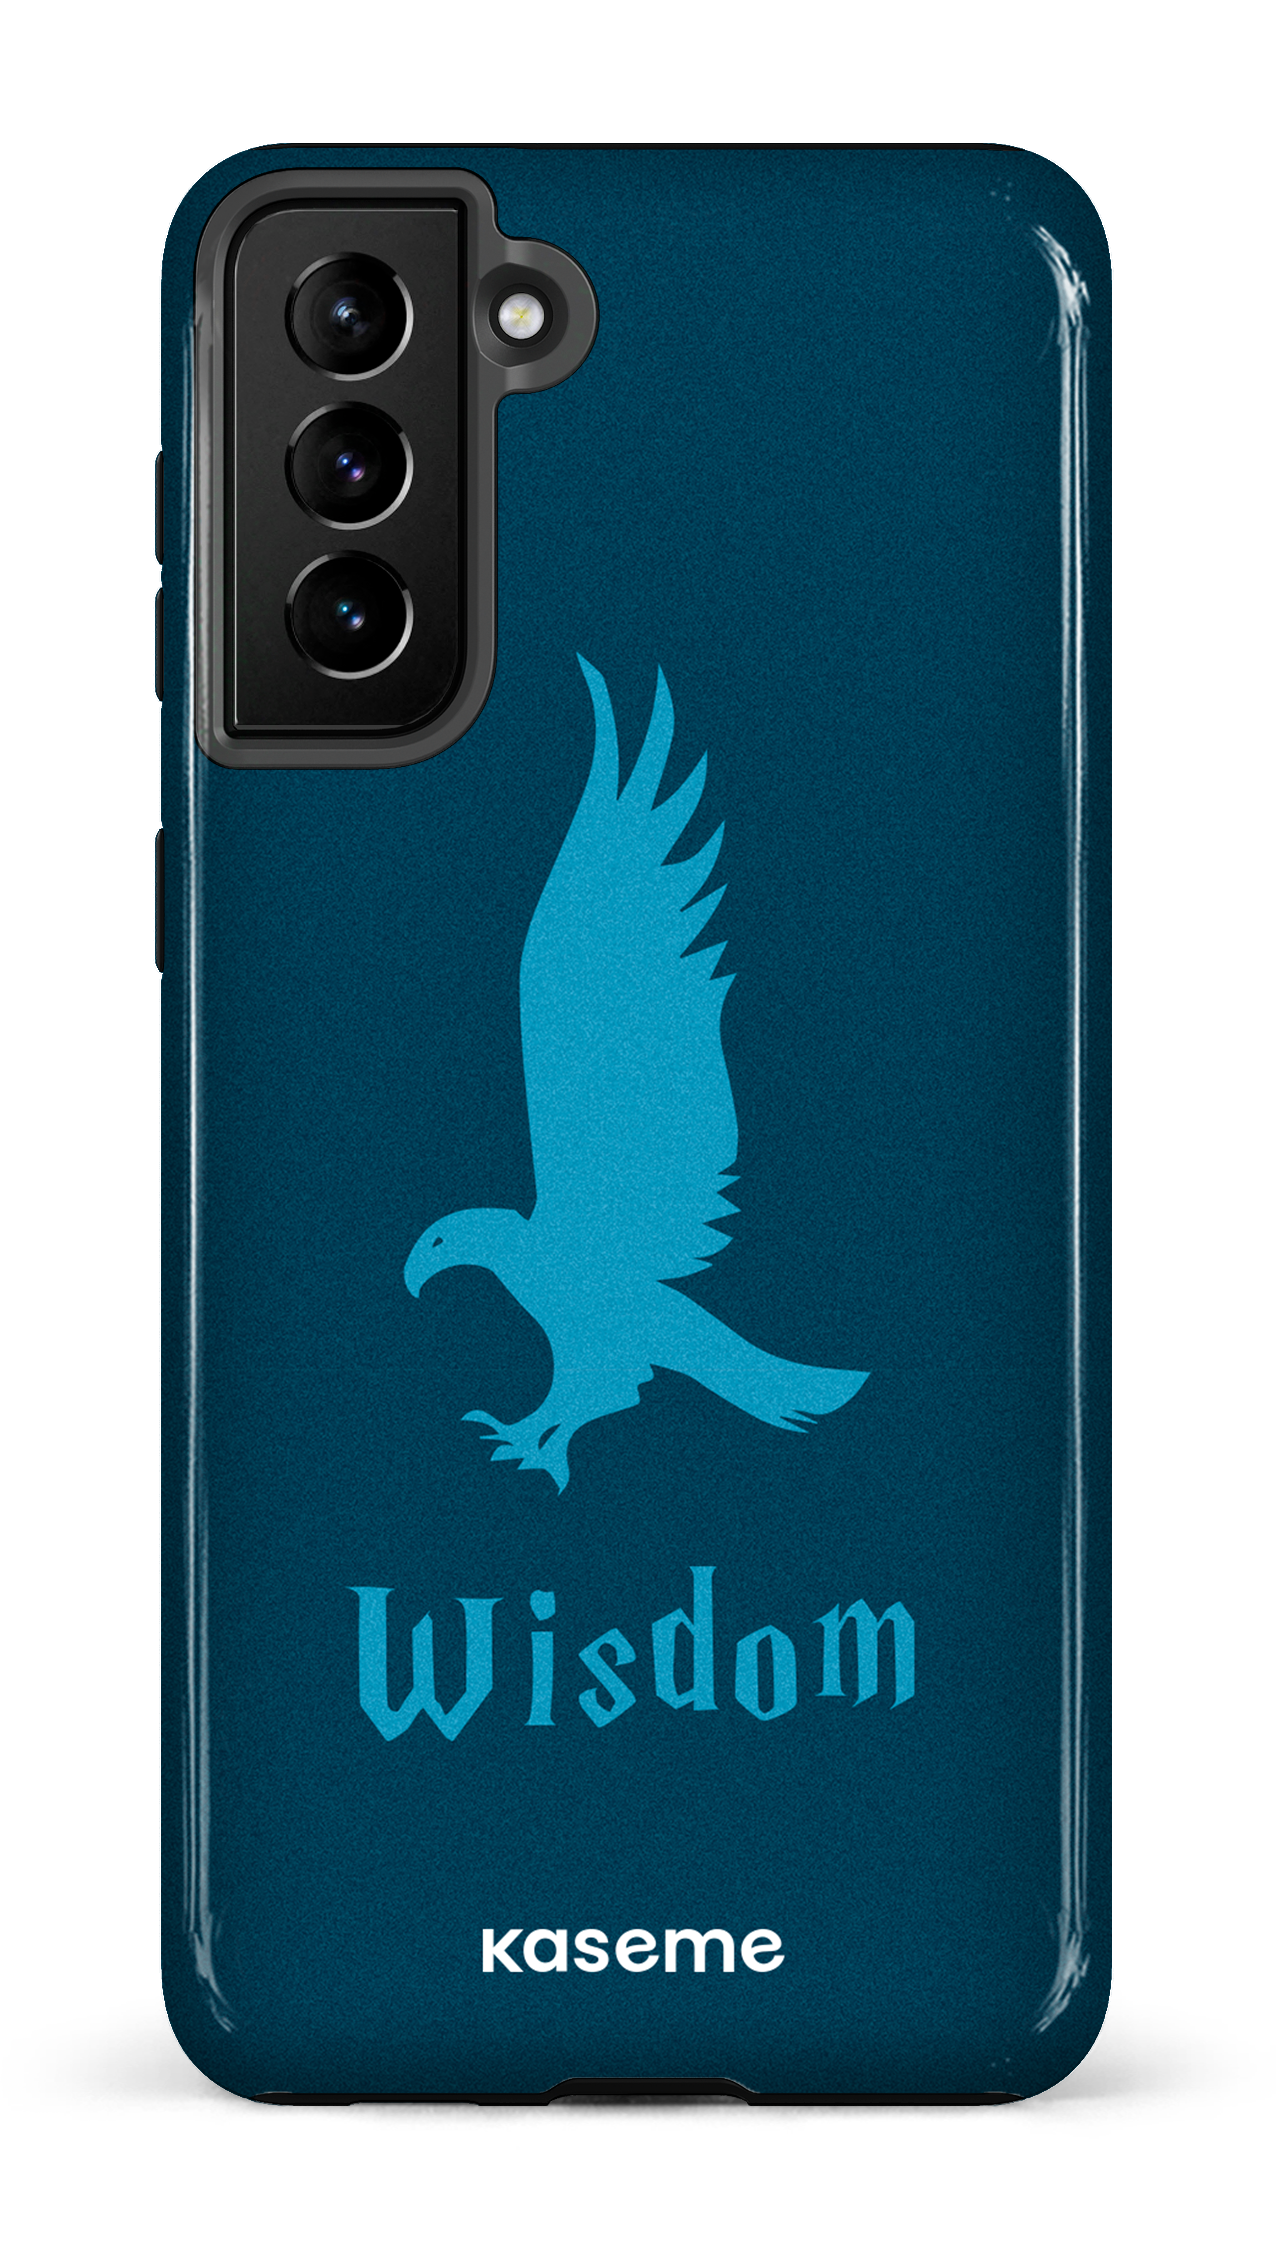 Wisdom - Galaxy S21 Plus